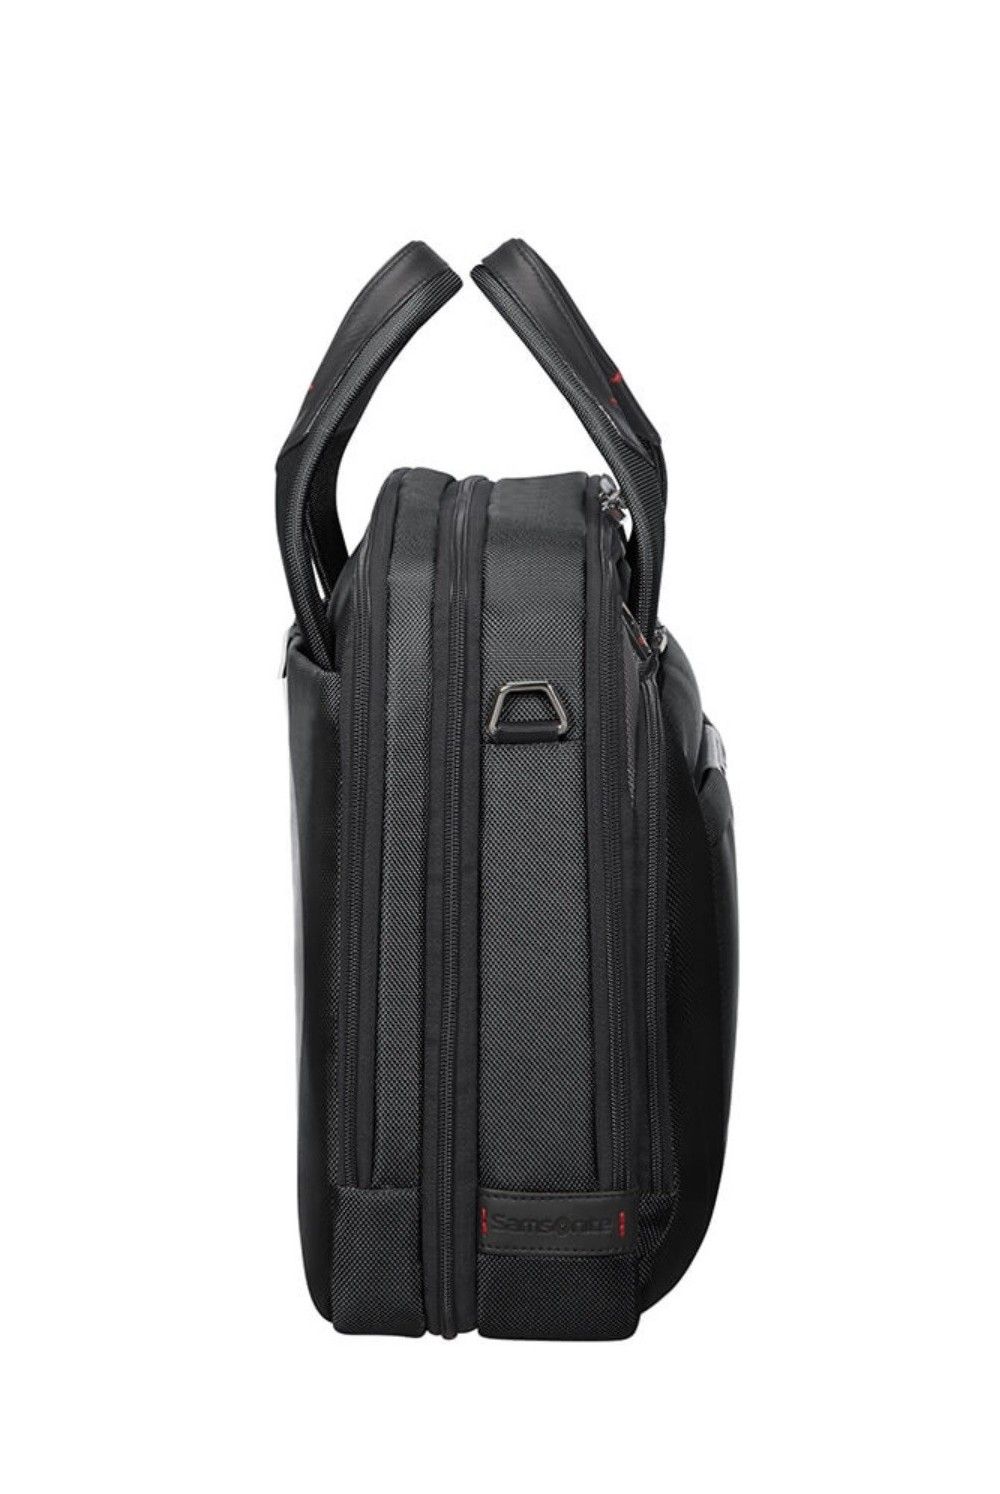 Samsonite Briefcase Pro DLX 5 15.6 inch 17-23 liter black